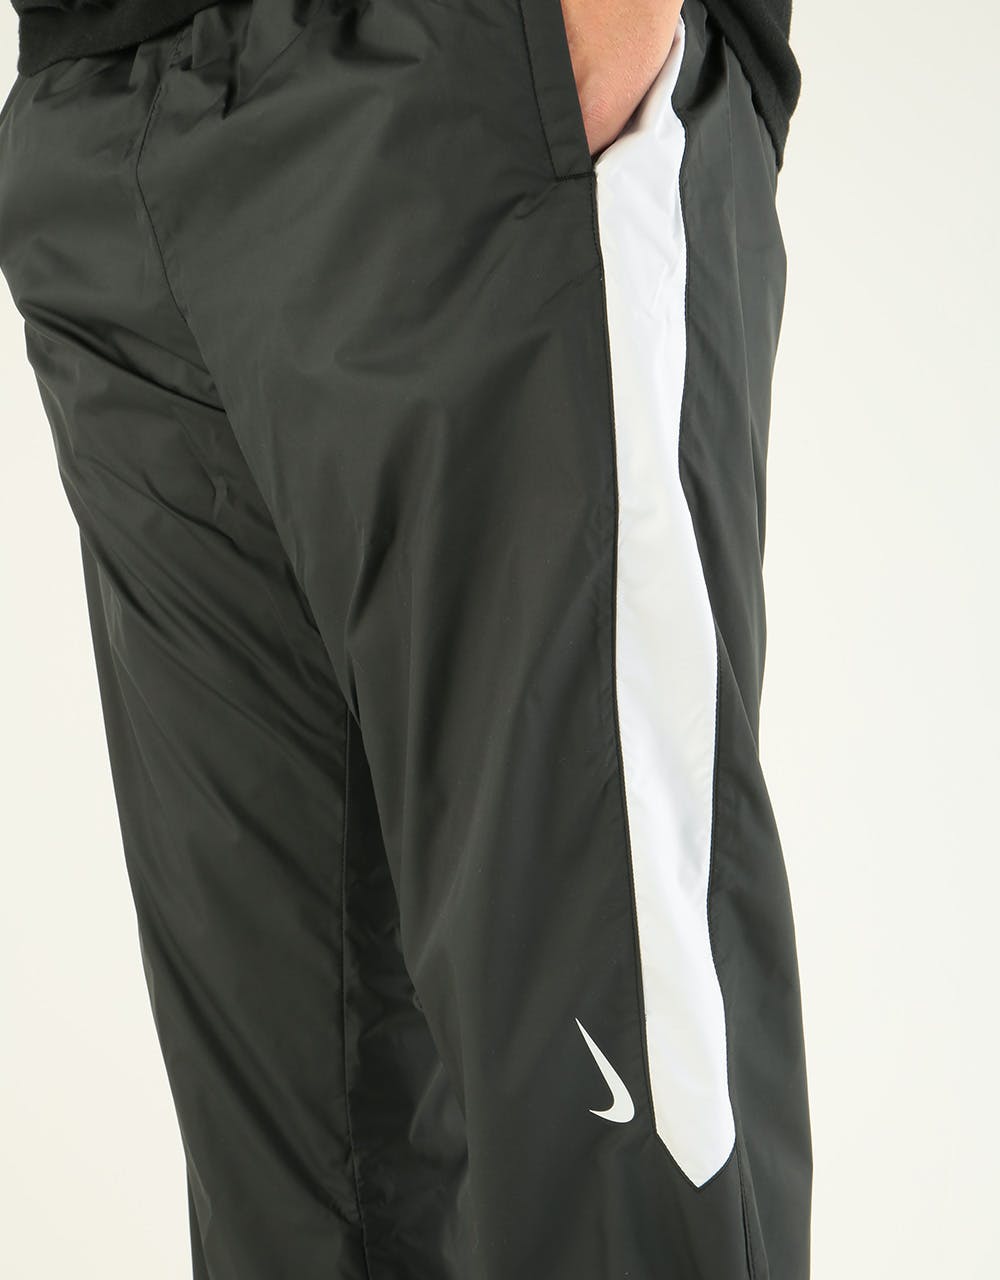 Nike SB Shield Mens Swoosh Skate Track Pants CI1990-402 Size L